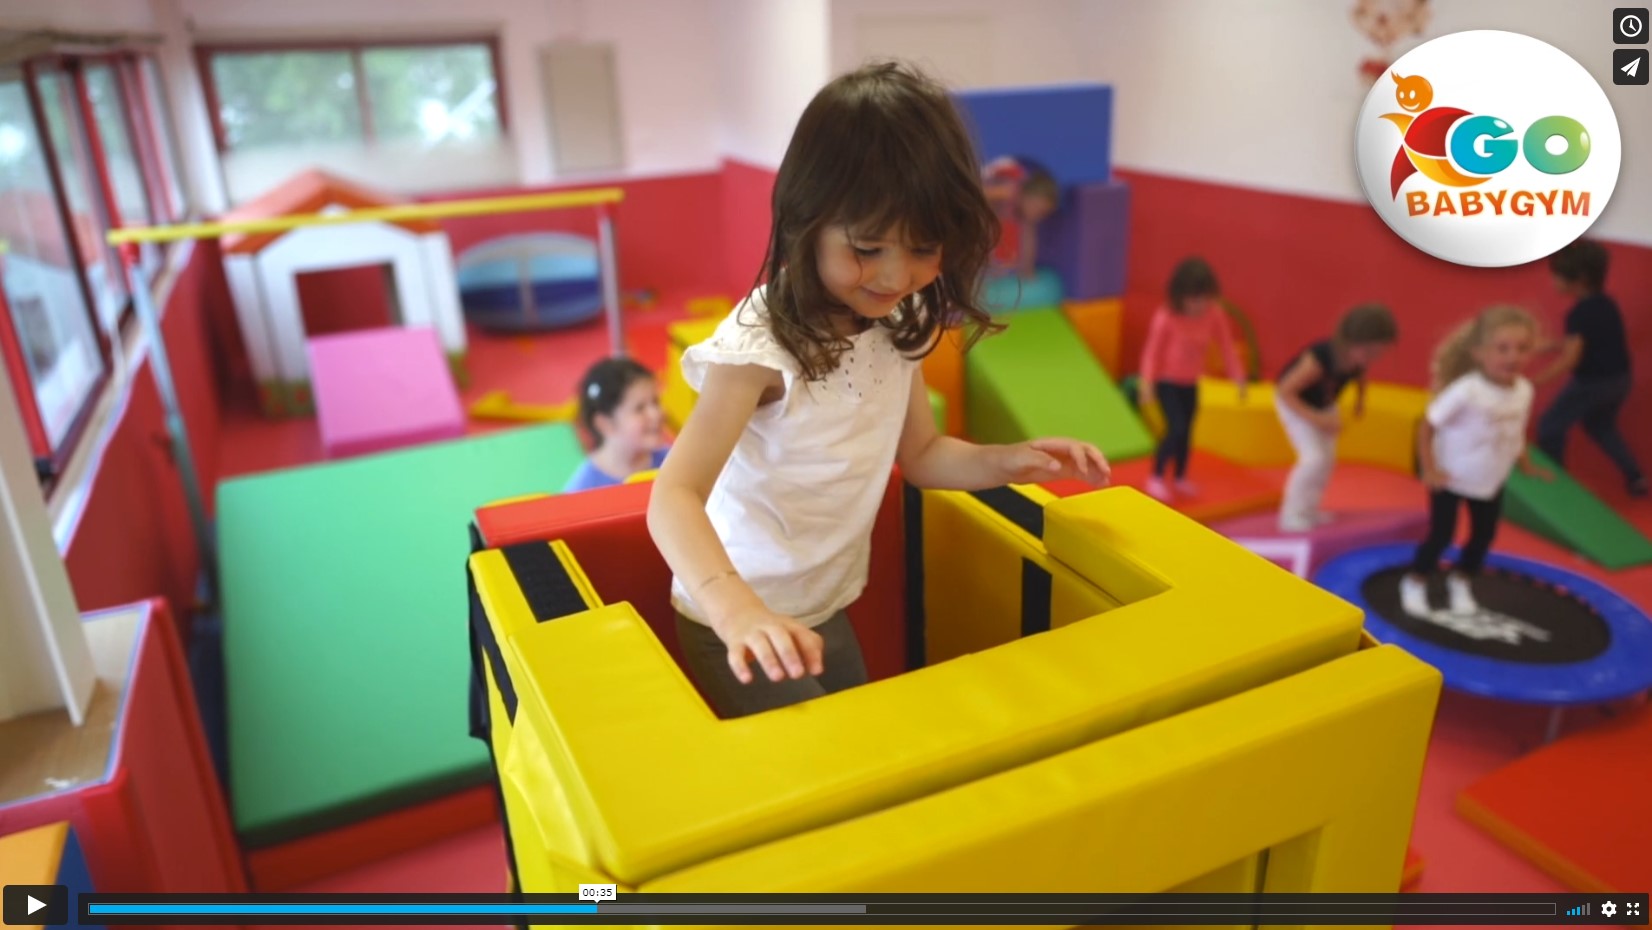 Prestation jeux éveil moteur pour bébé et enfant : location matériel  baby-gym et piscine à balles gonflables - LOCSPORT